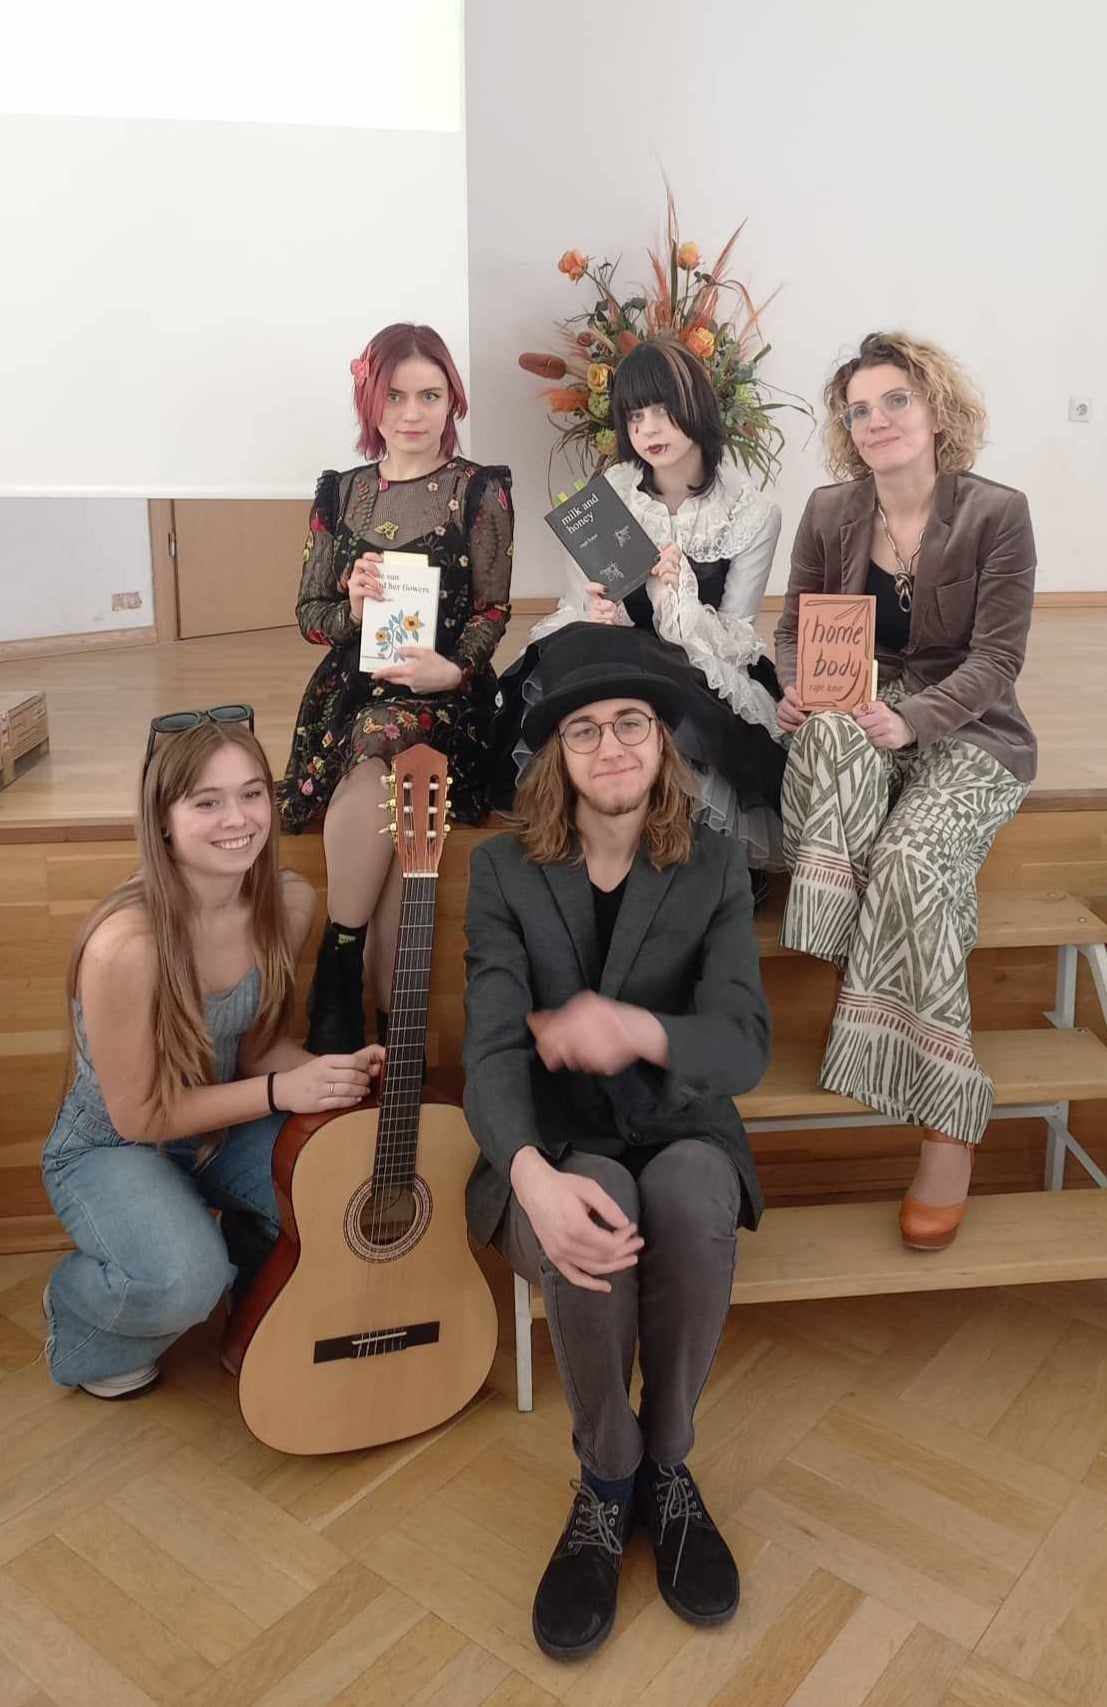 Cztery kobiety i jeden mężczyzna pozują do zdjęcia.Jedna z kobiet trzyma gitarę.